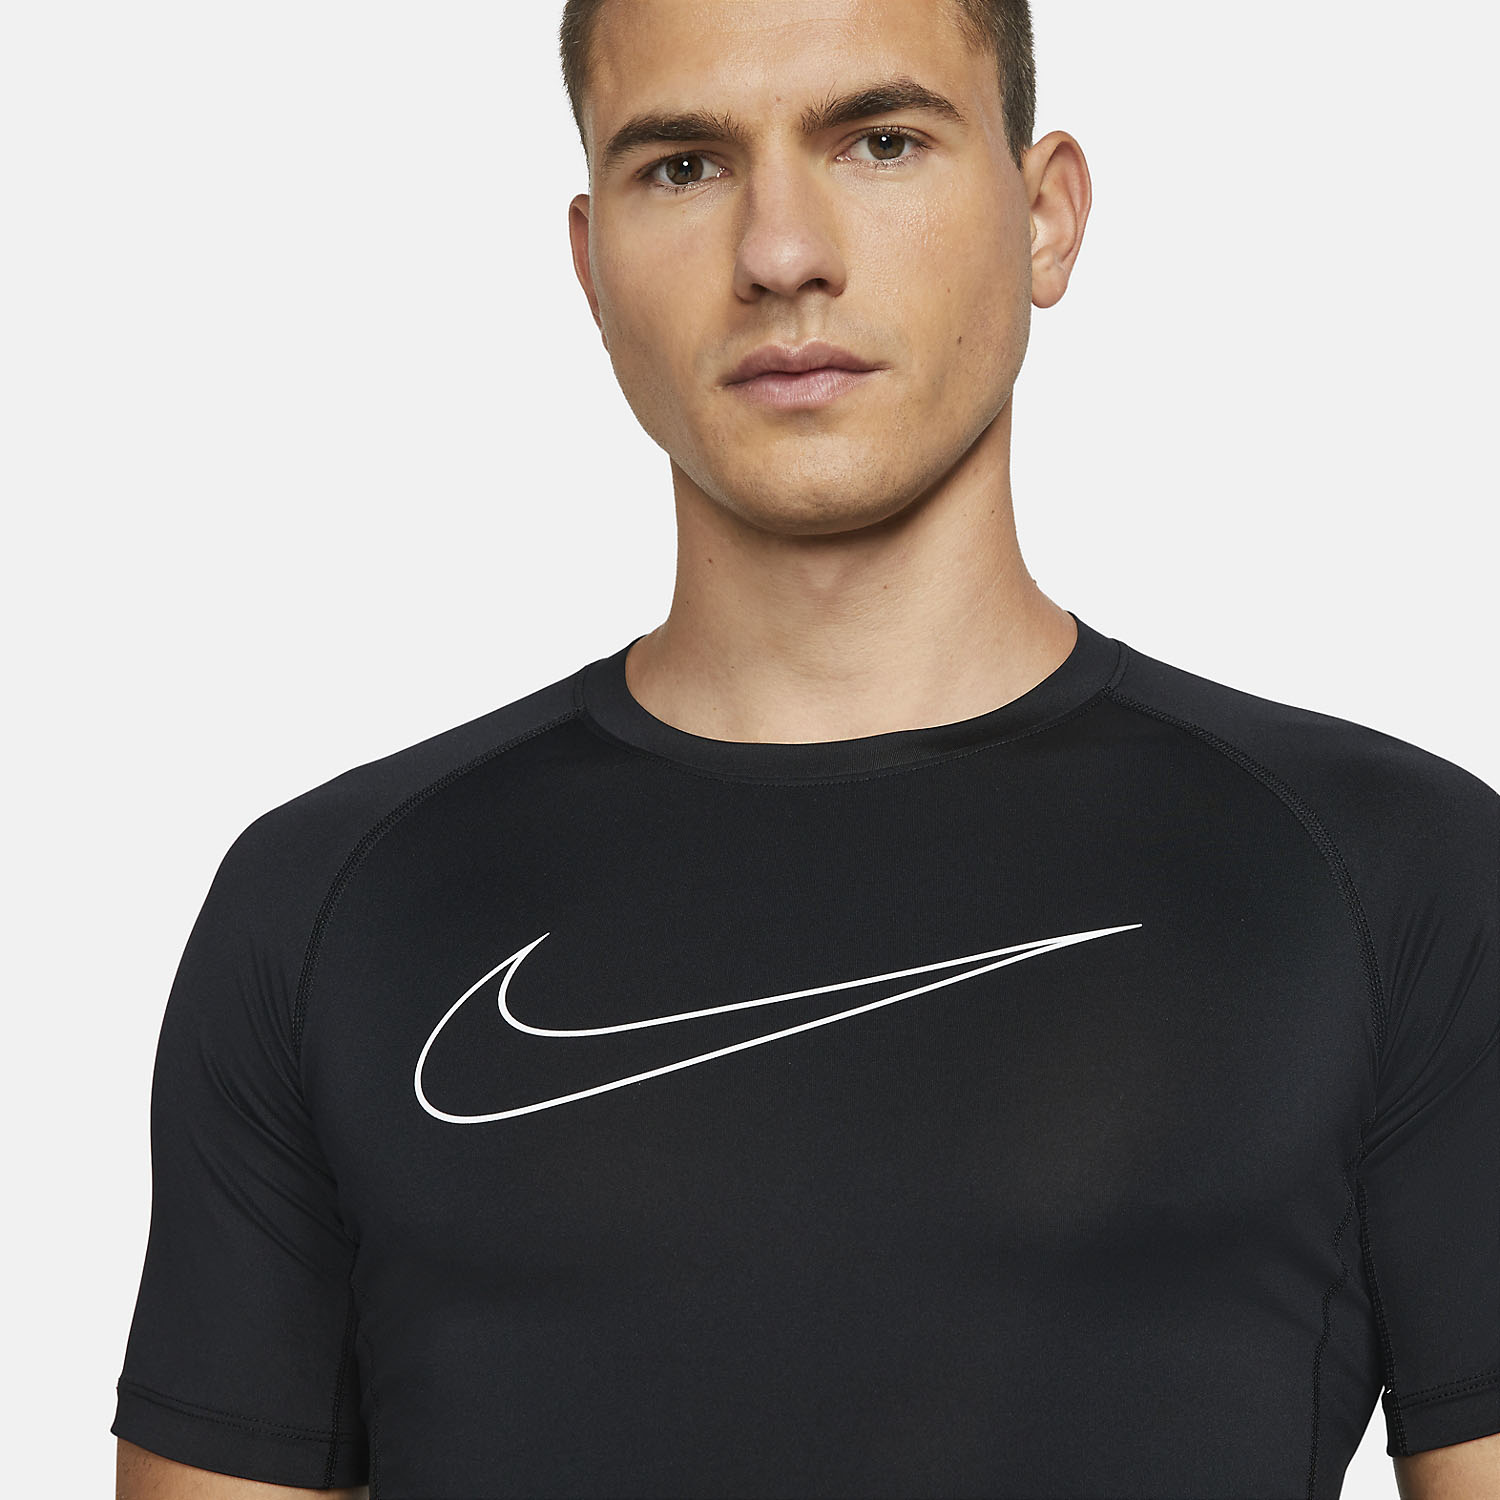 Nike Pro Logo Camiseta Tenis Hombre - Black/White